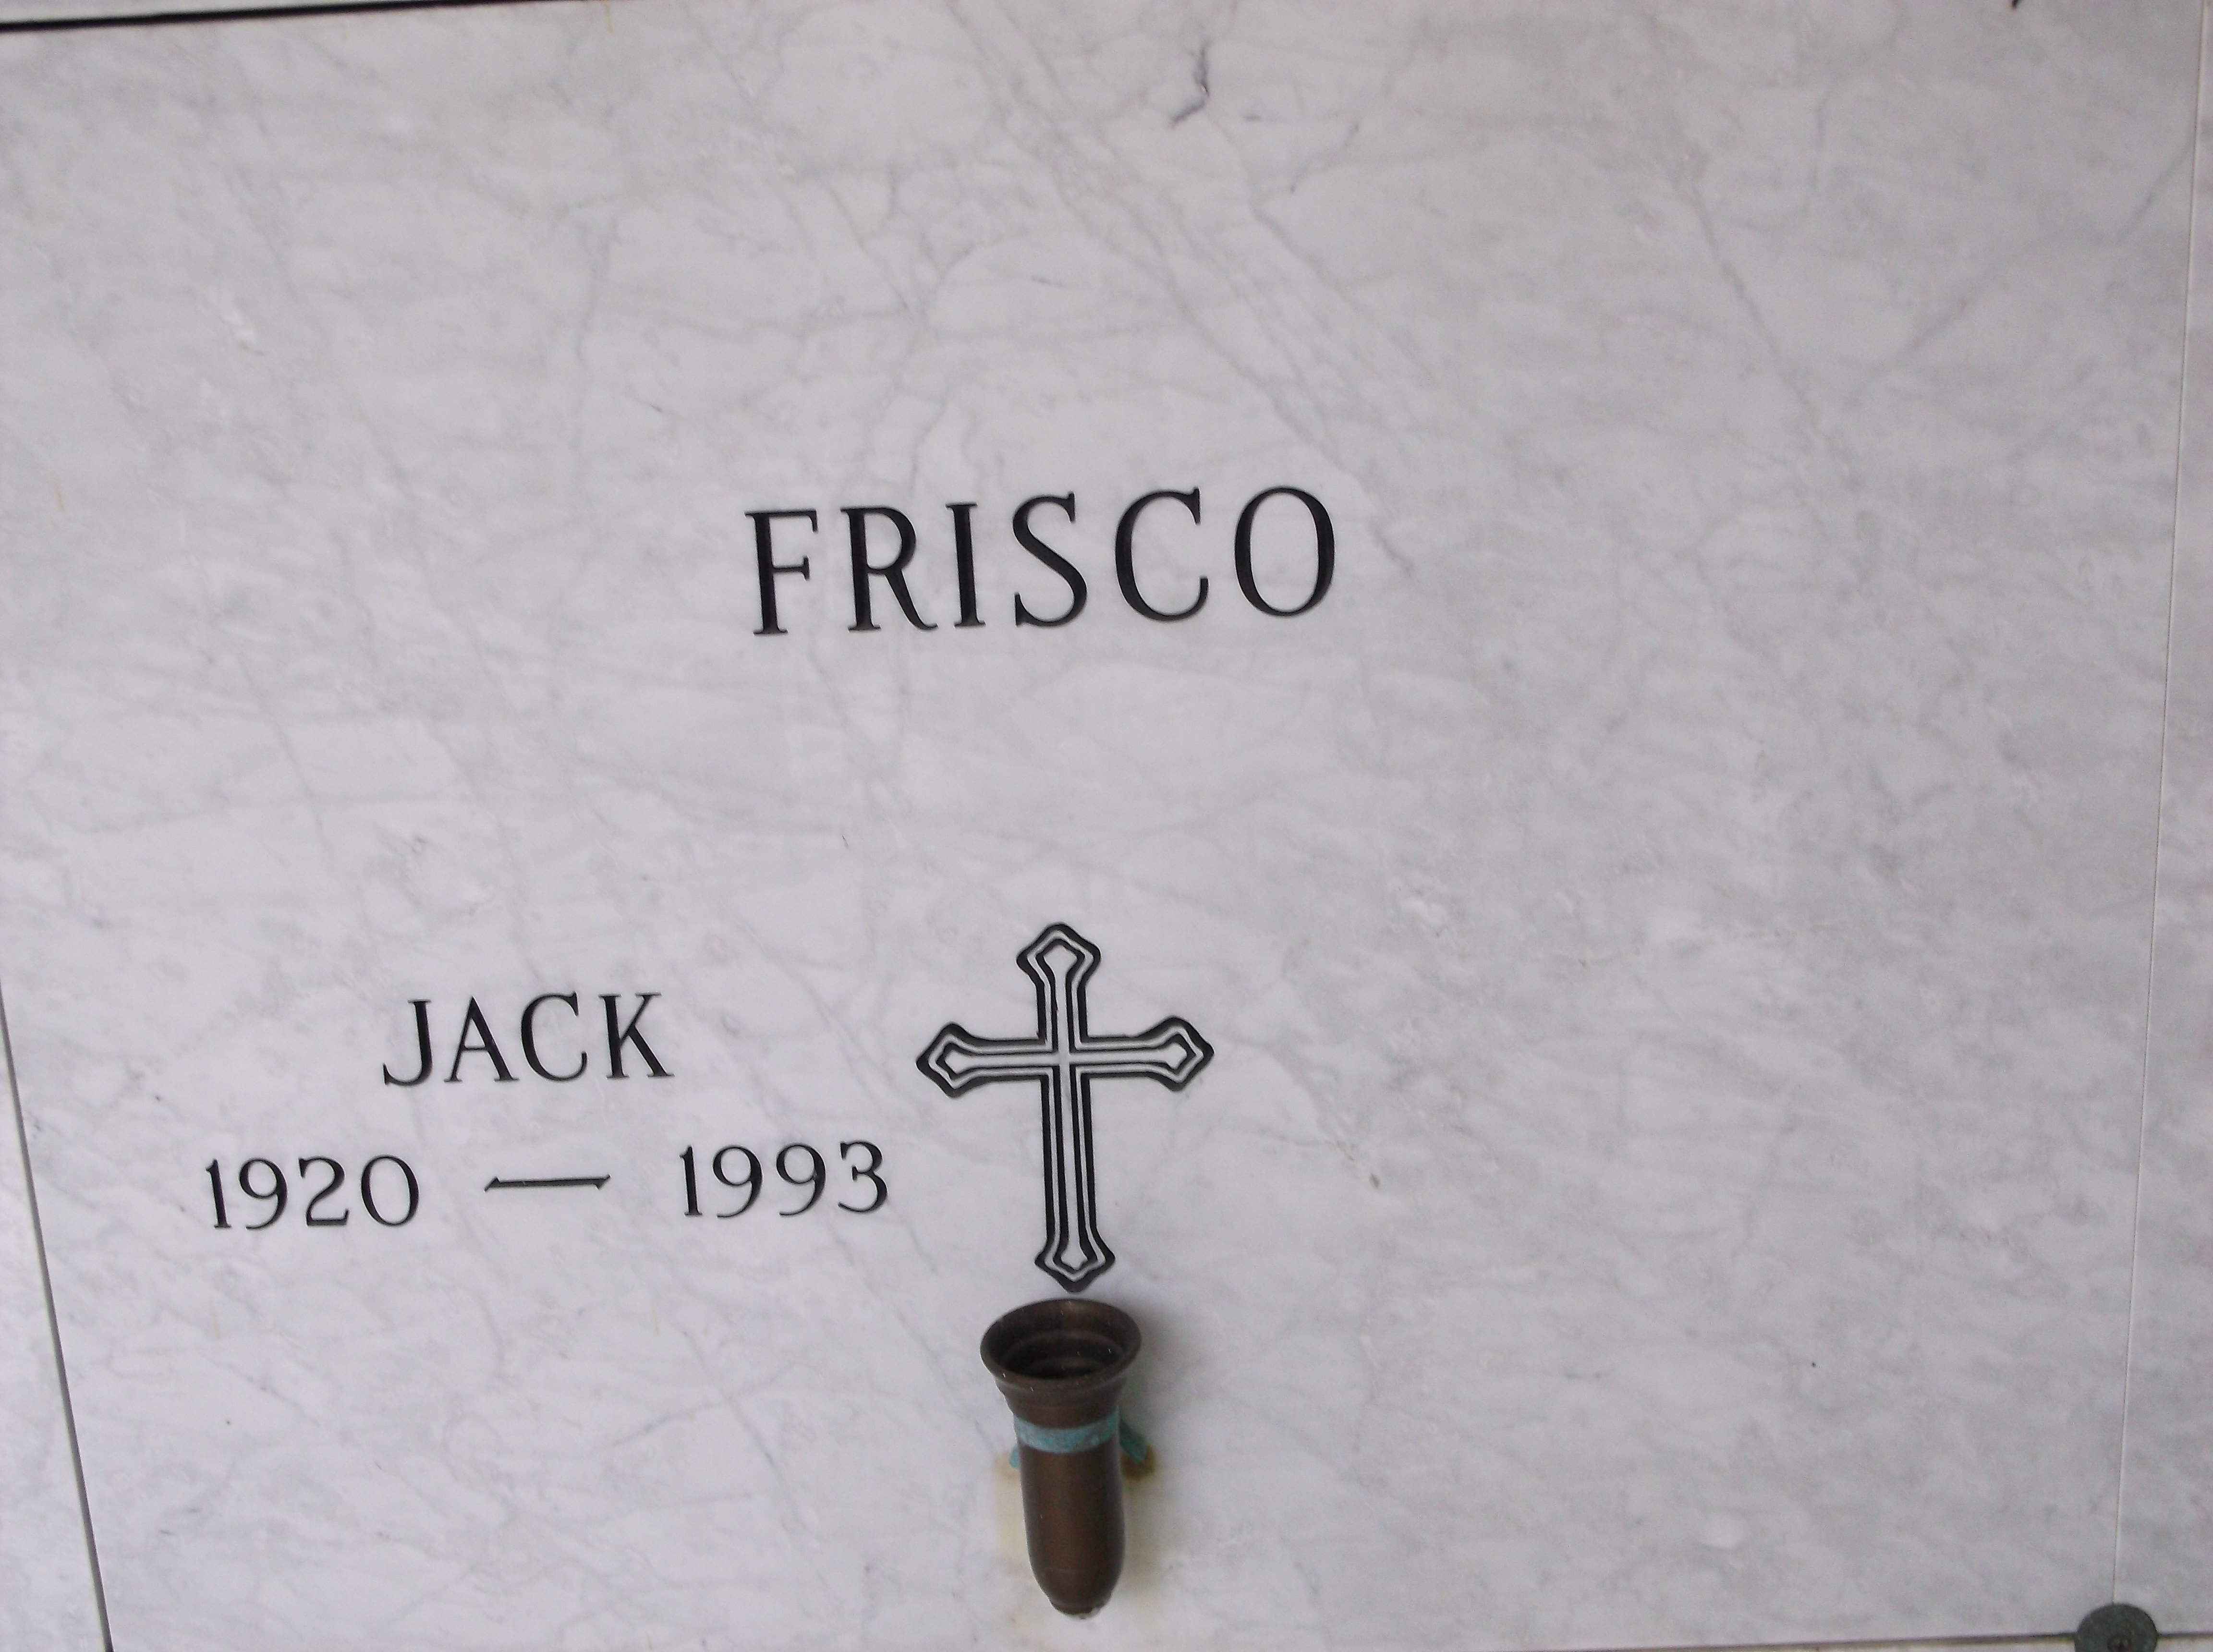 Jack Frisco